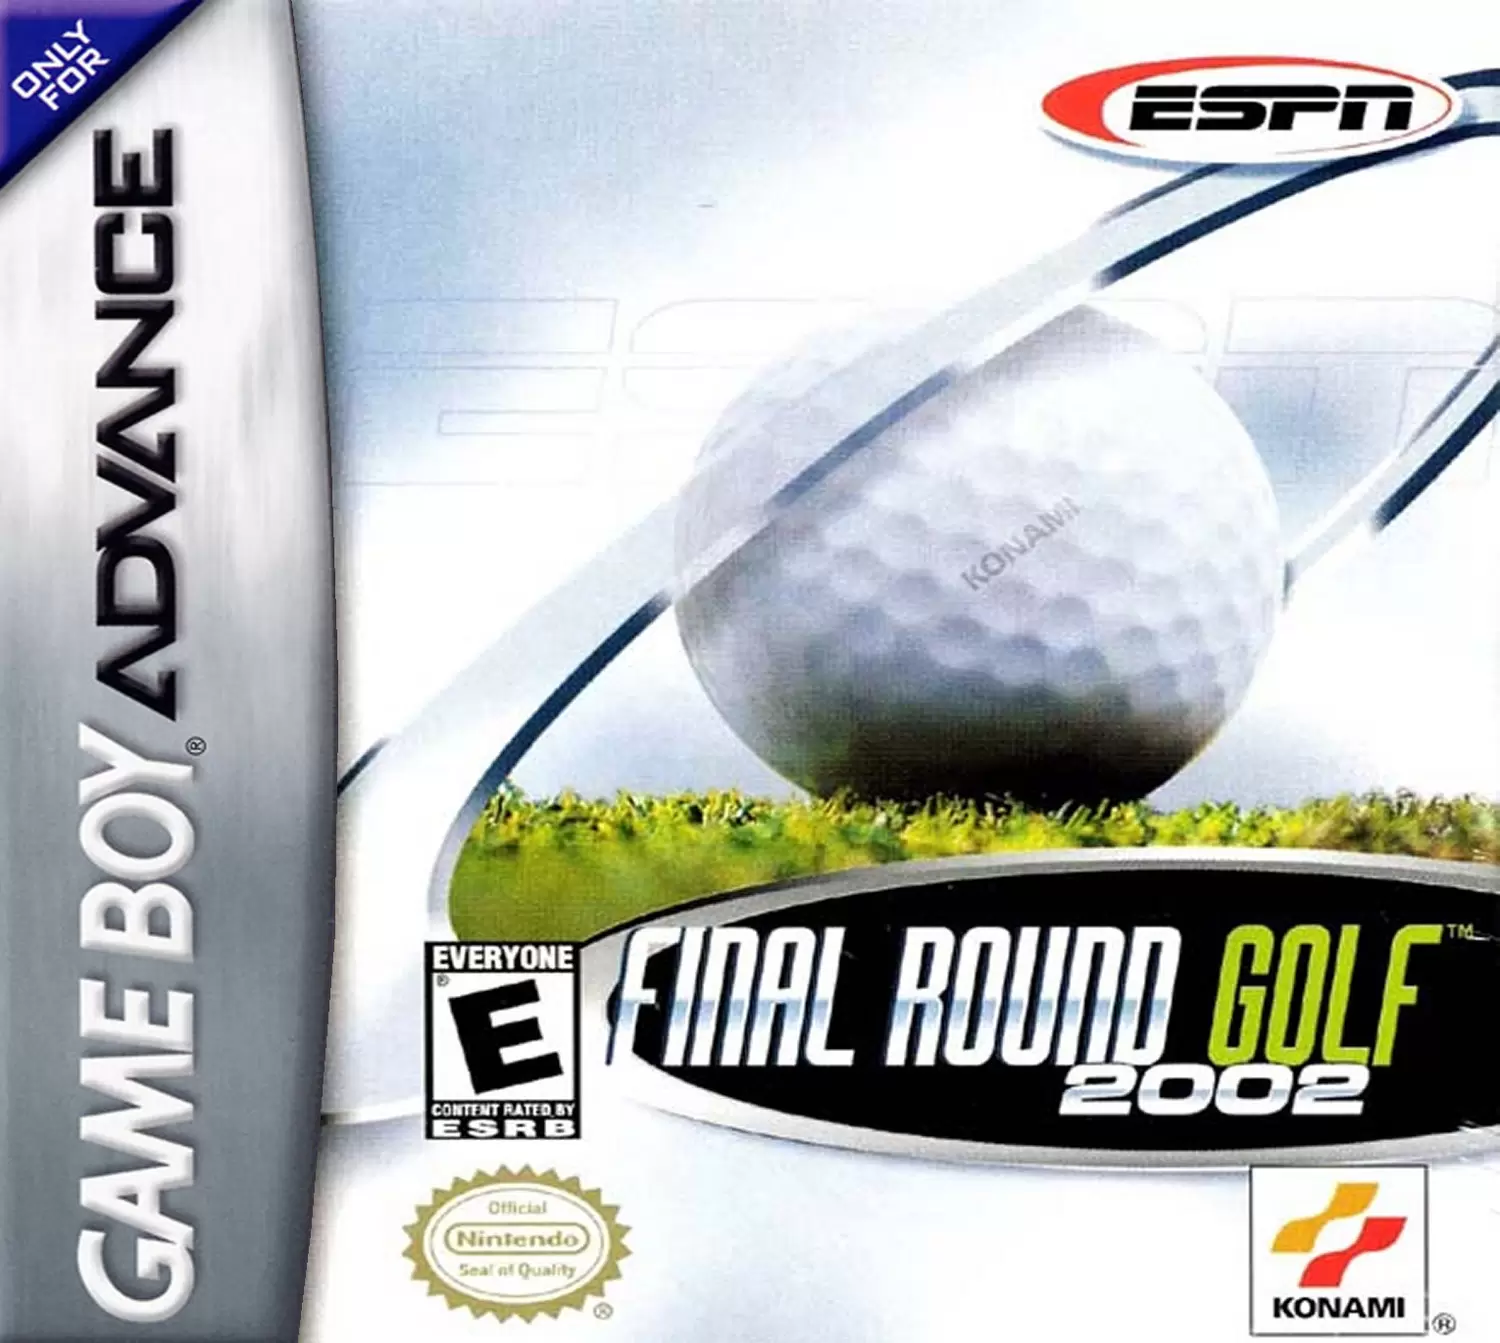 Game Boy Advance Games - ESPN Final Round Golf 2002